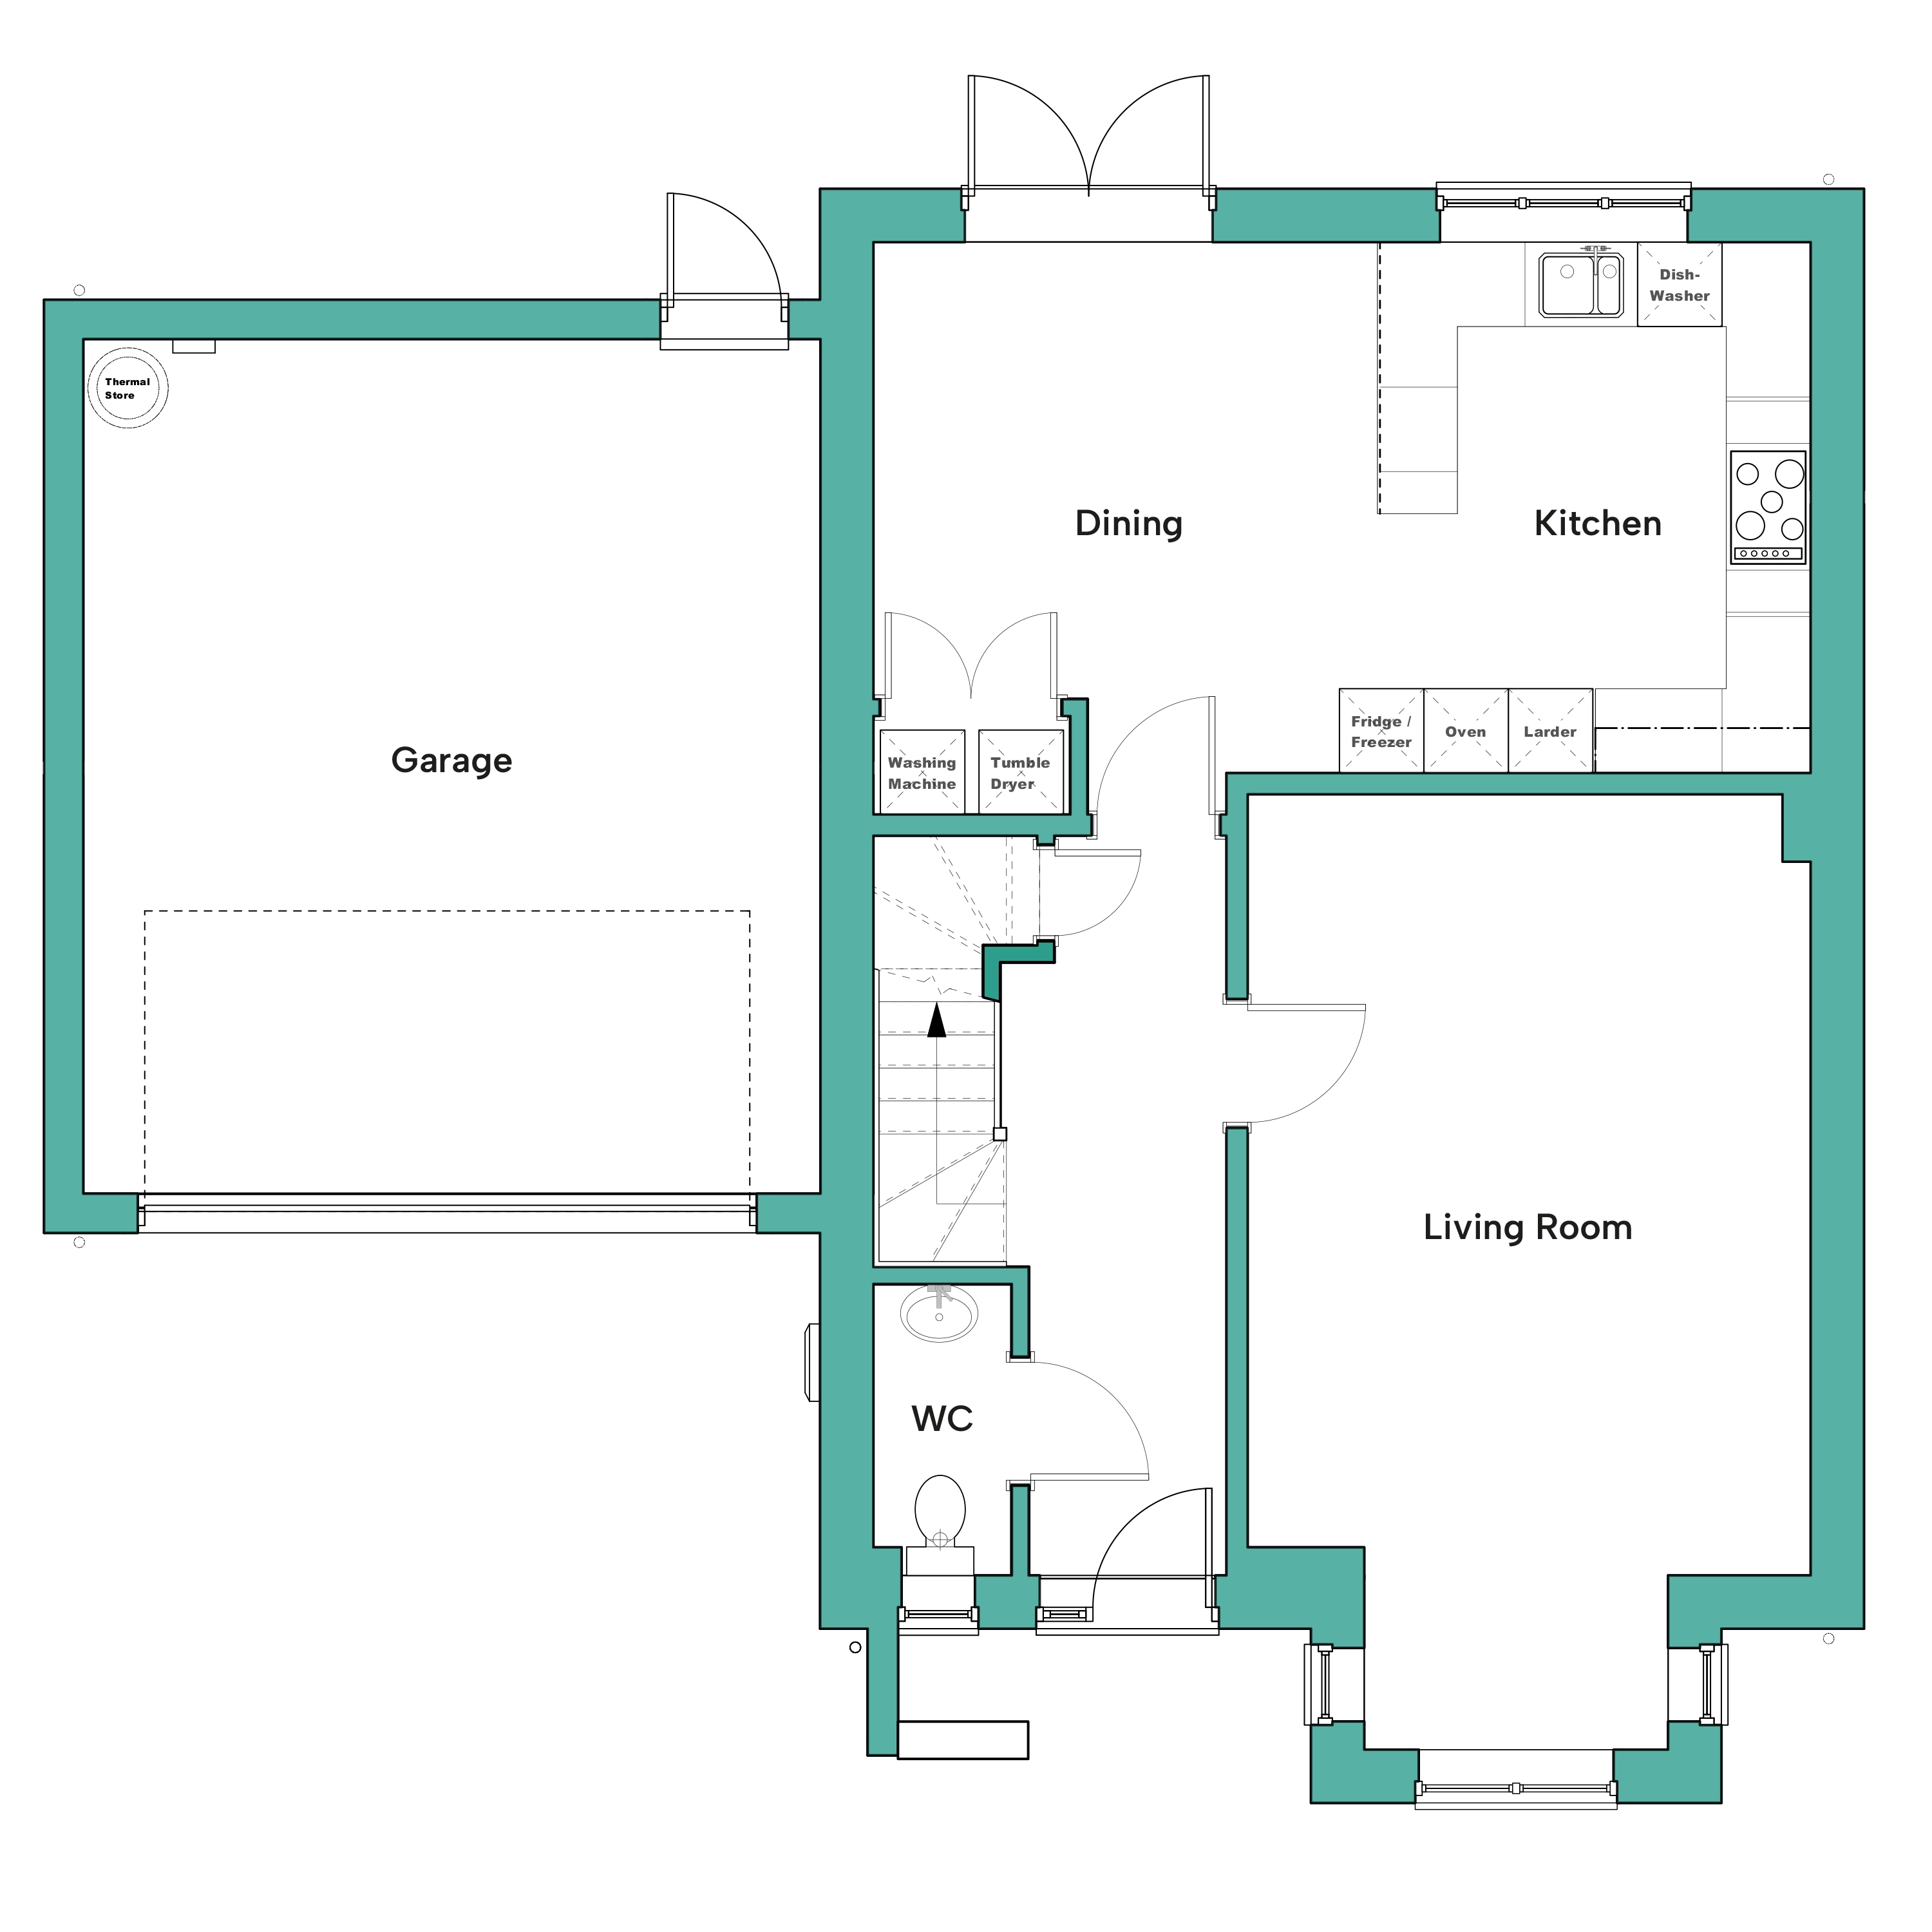 Ground floor floor plan of The Teal